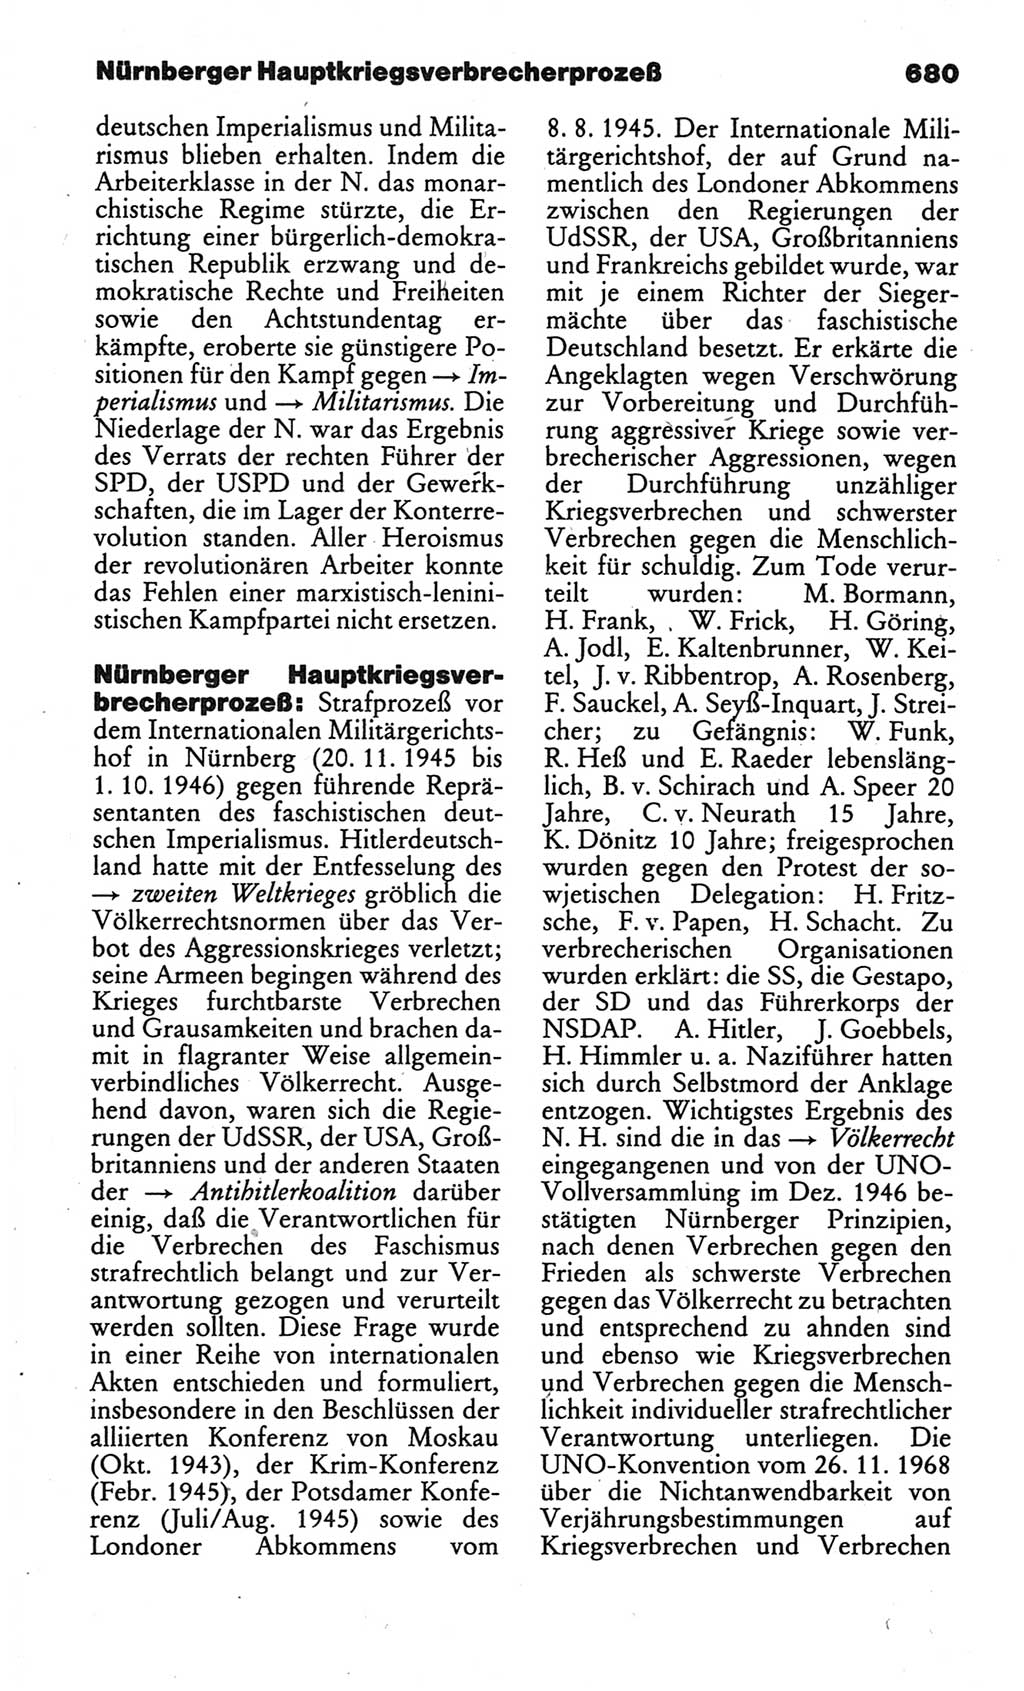 Kleines politisches Wörterbuch [Deutsche Demokratische Republik (DDR)] 1986, Seite 680 (Kl. pol. Wb. DDR 1986, S. 680)